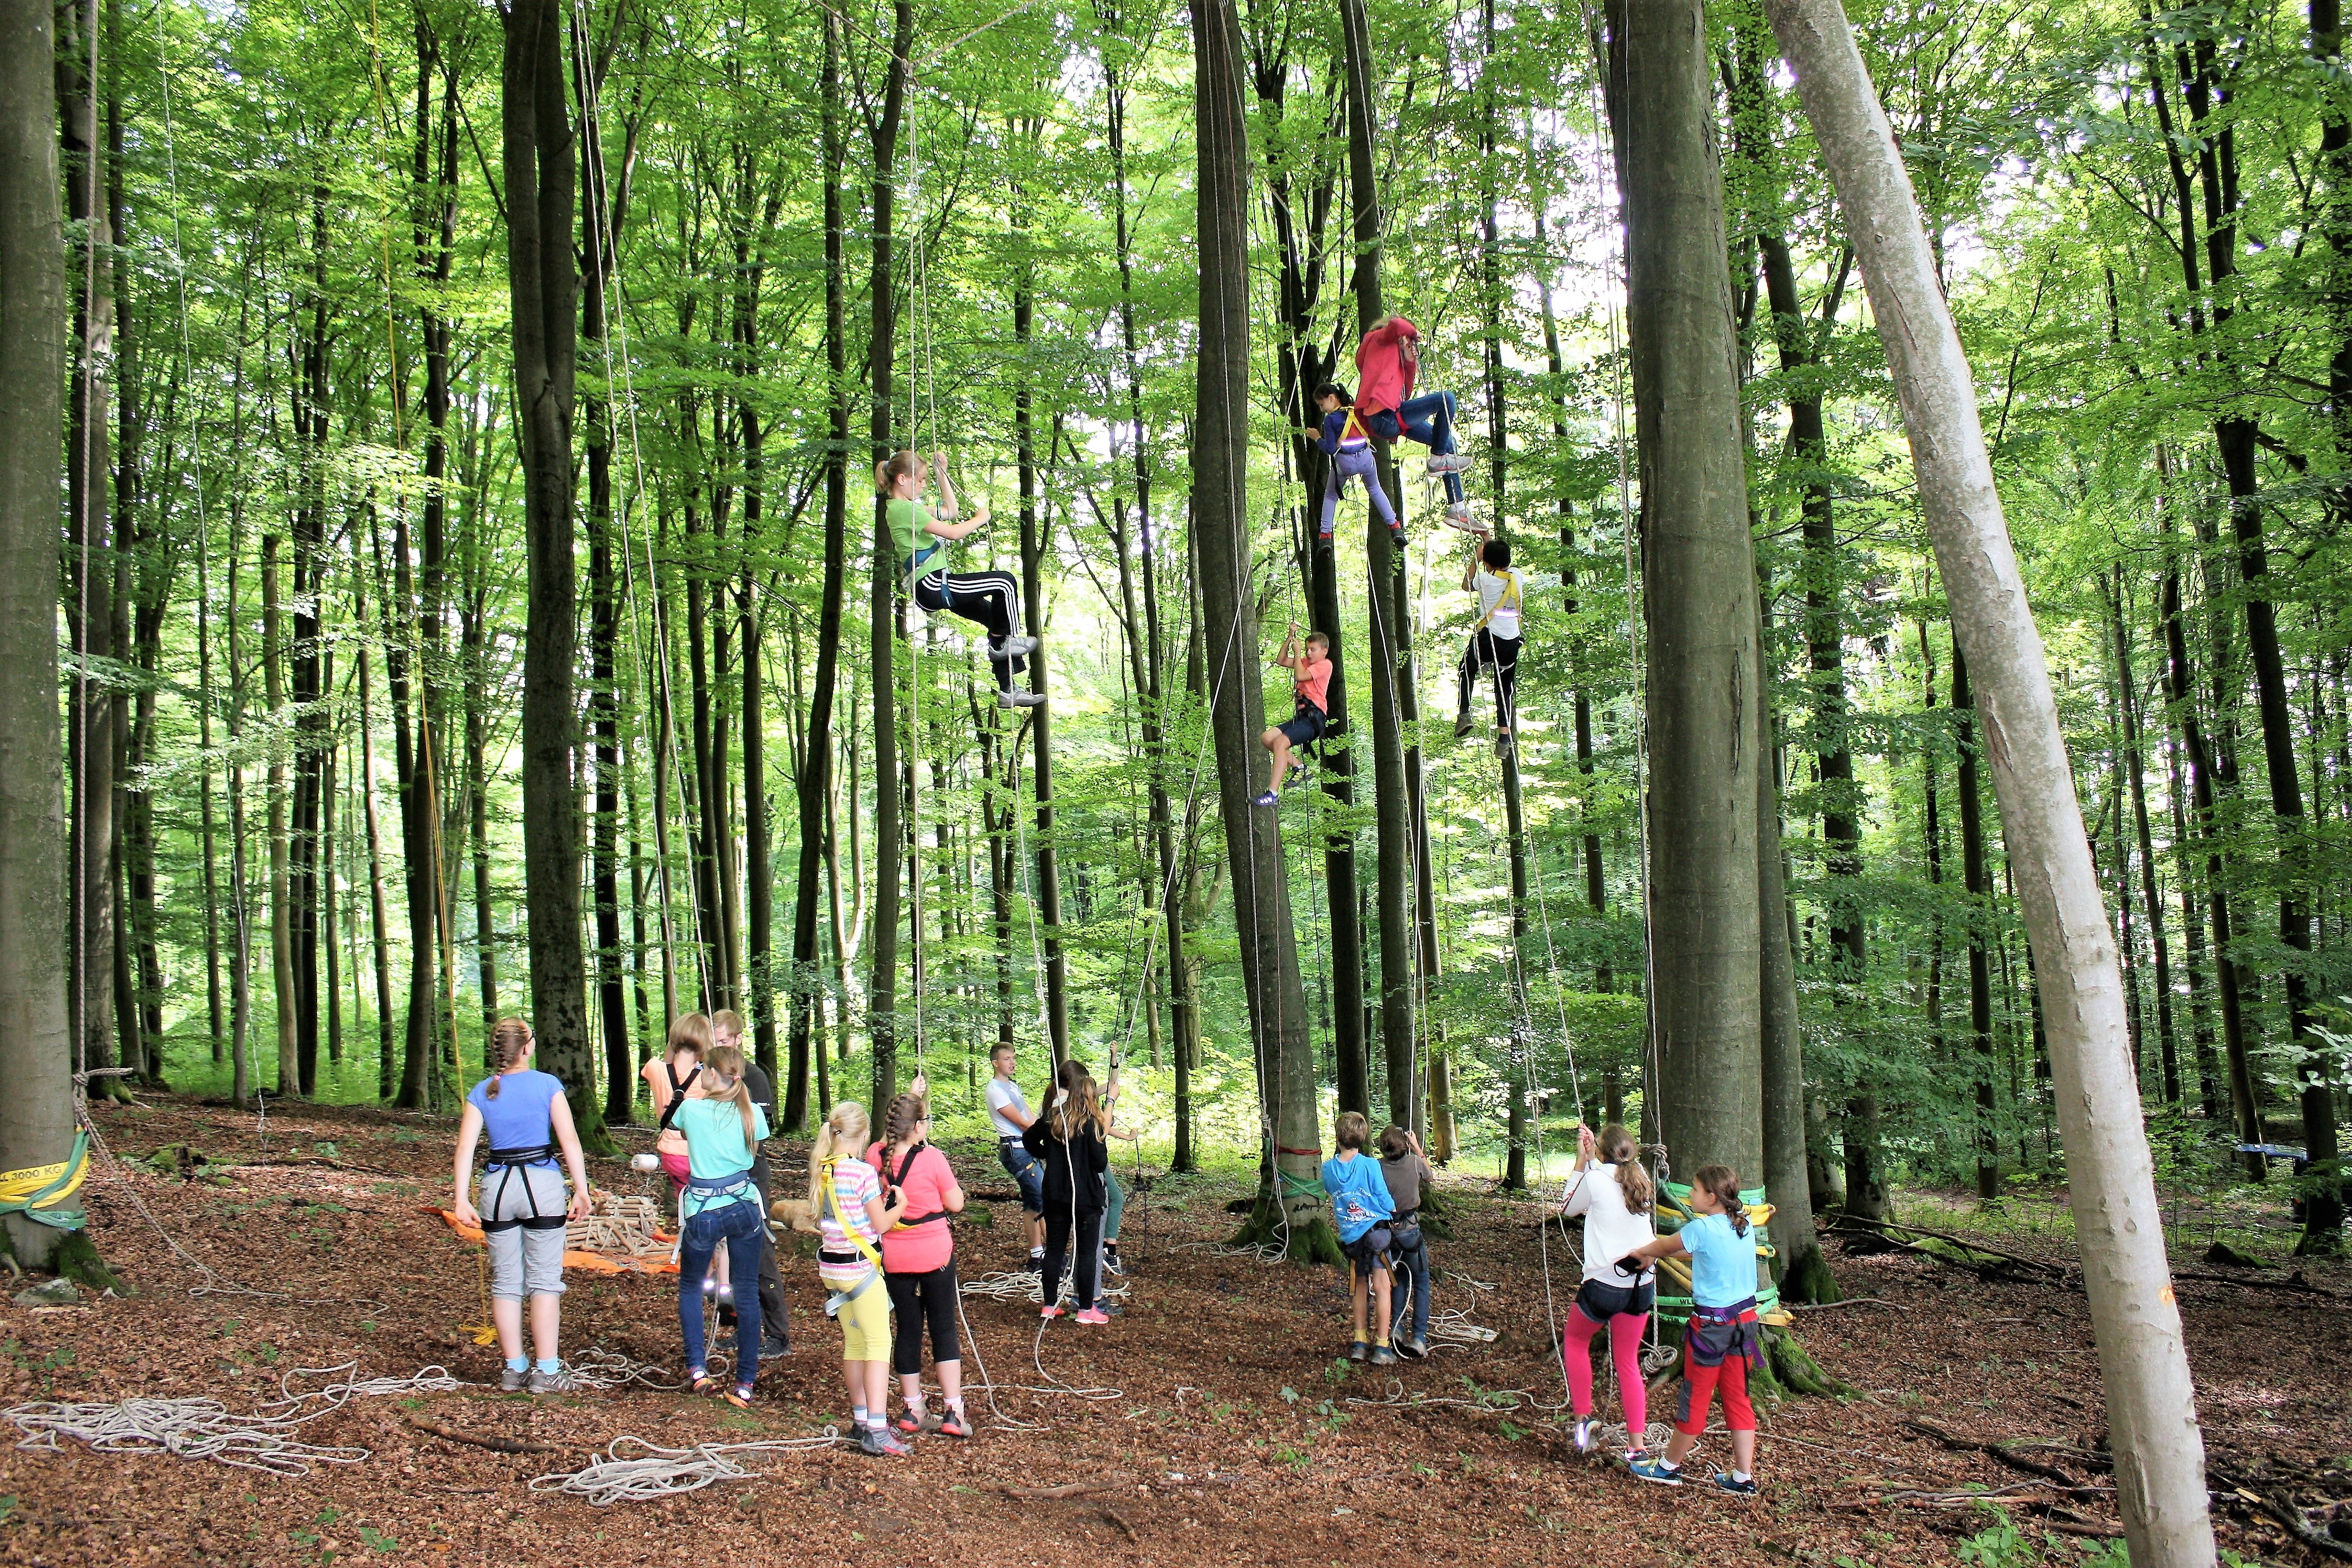 Kinder seilen sich mit Hilfe von Gurtzeug, gesichert von anderen Kindern am Boden, aus Bäumen ab. Teamaufgabe gemeistert!